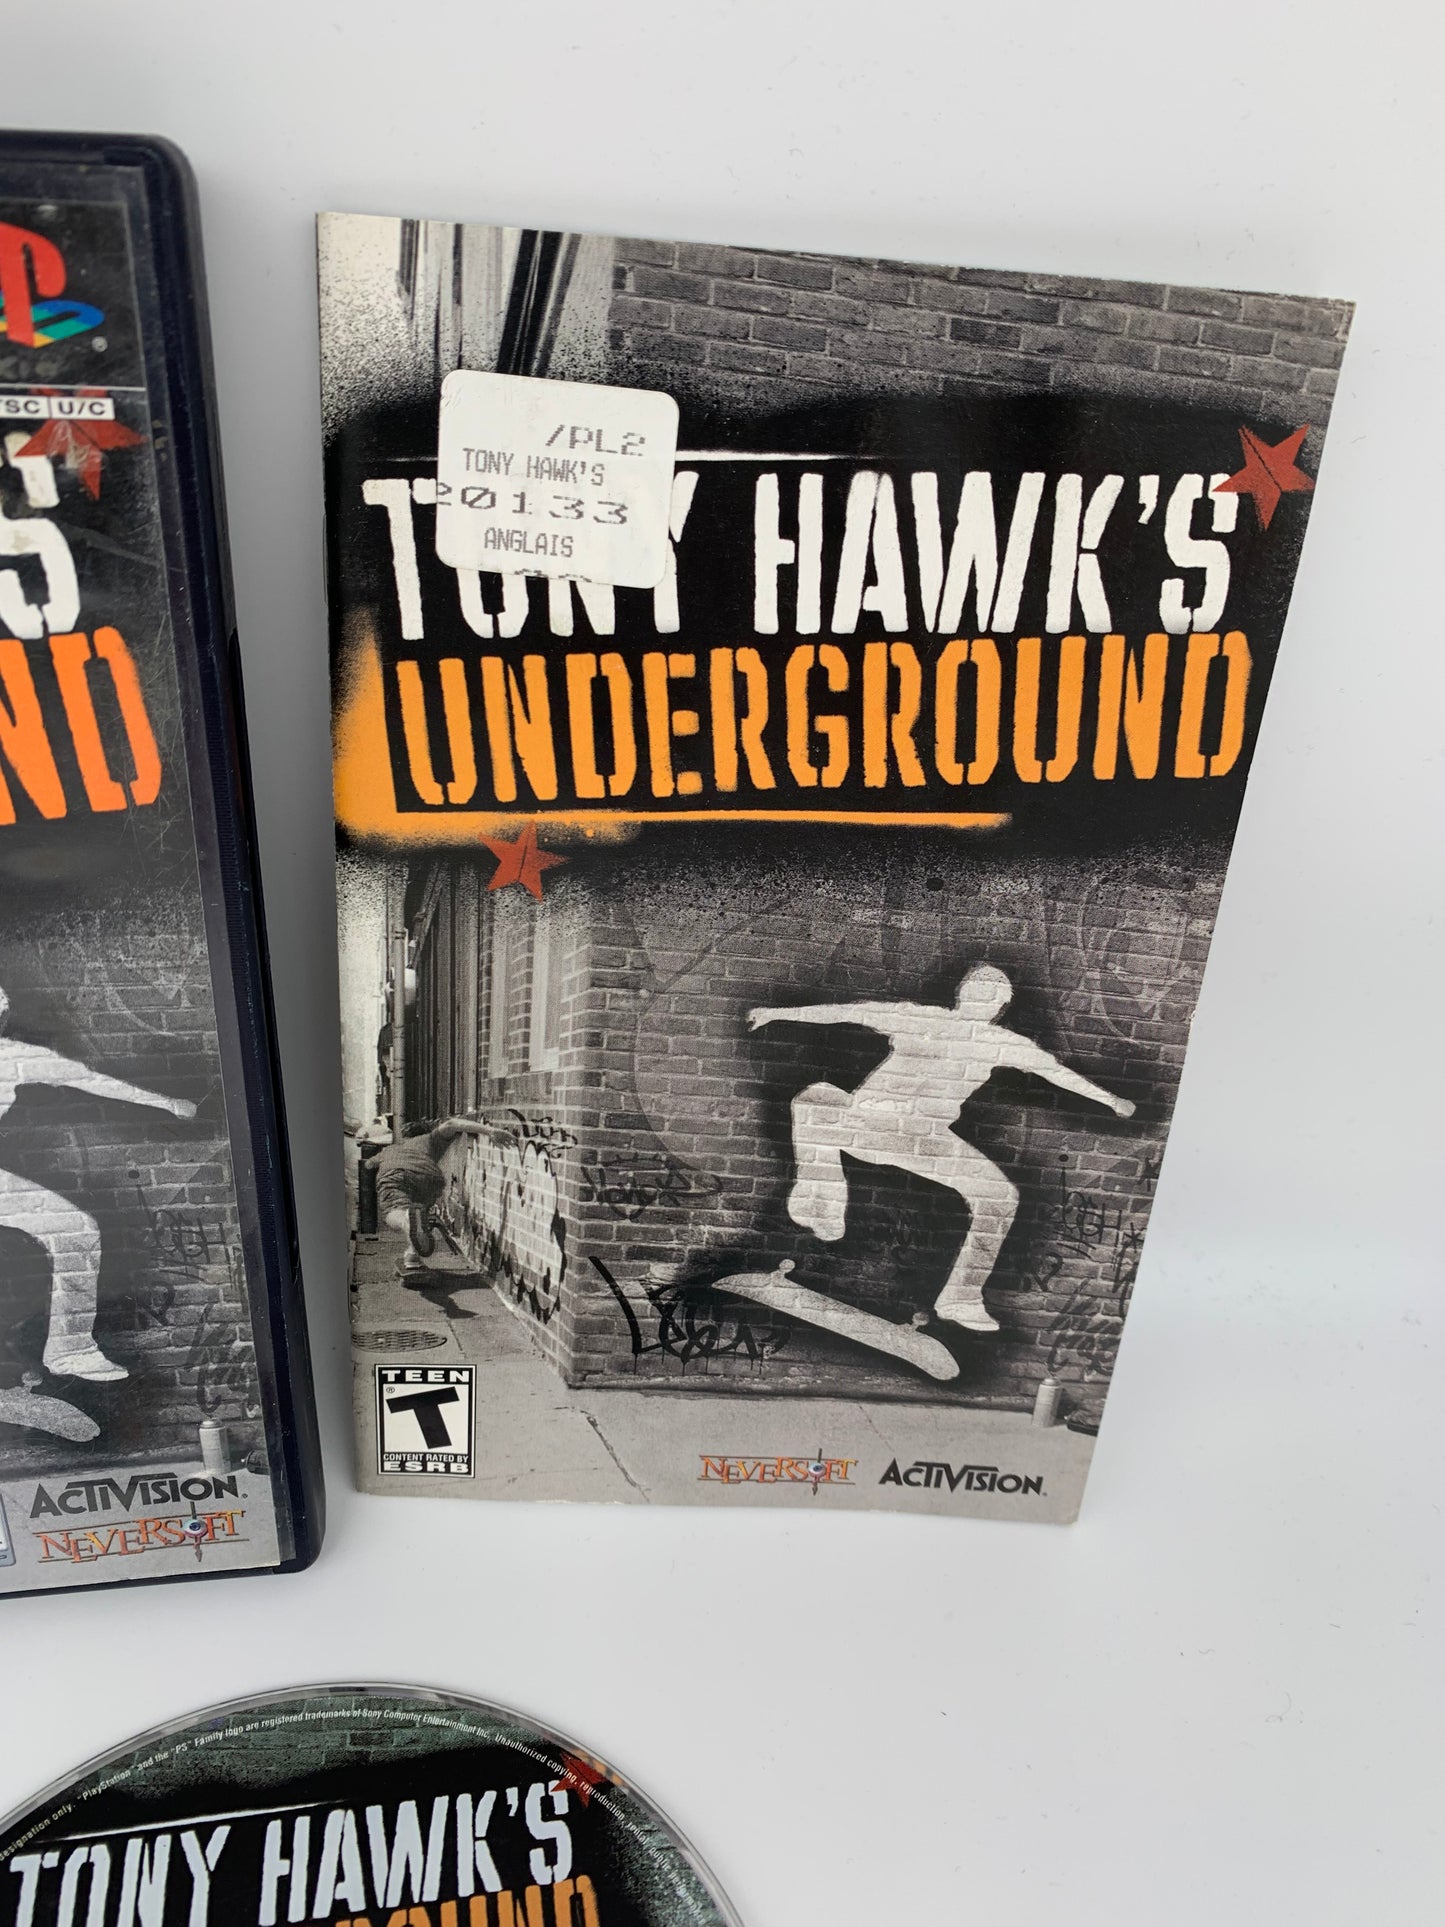 SONY PLAYSTATiON 2 [PS2] | TONY HAWKS UNDERGROUND